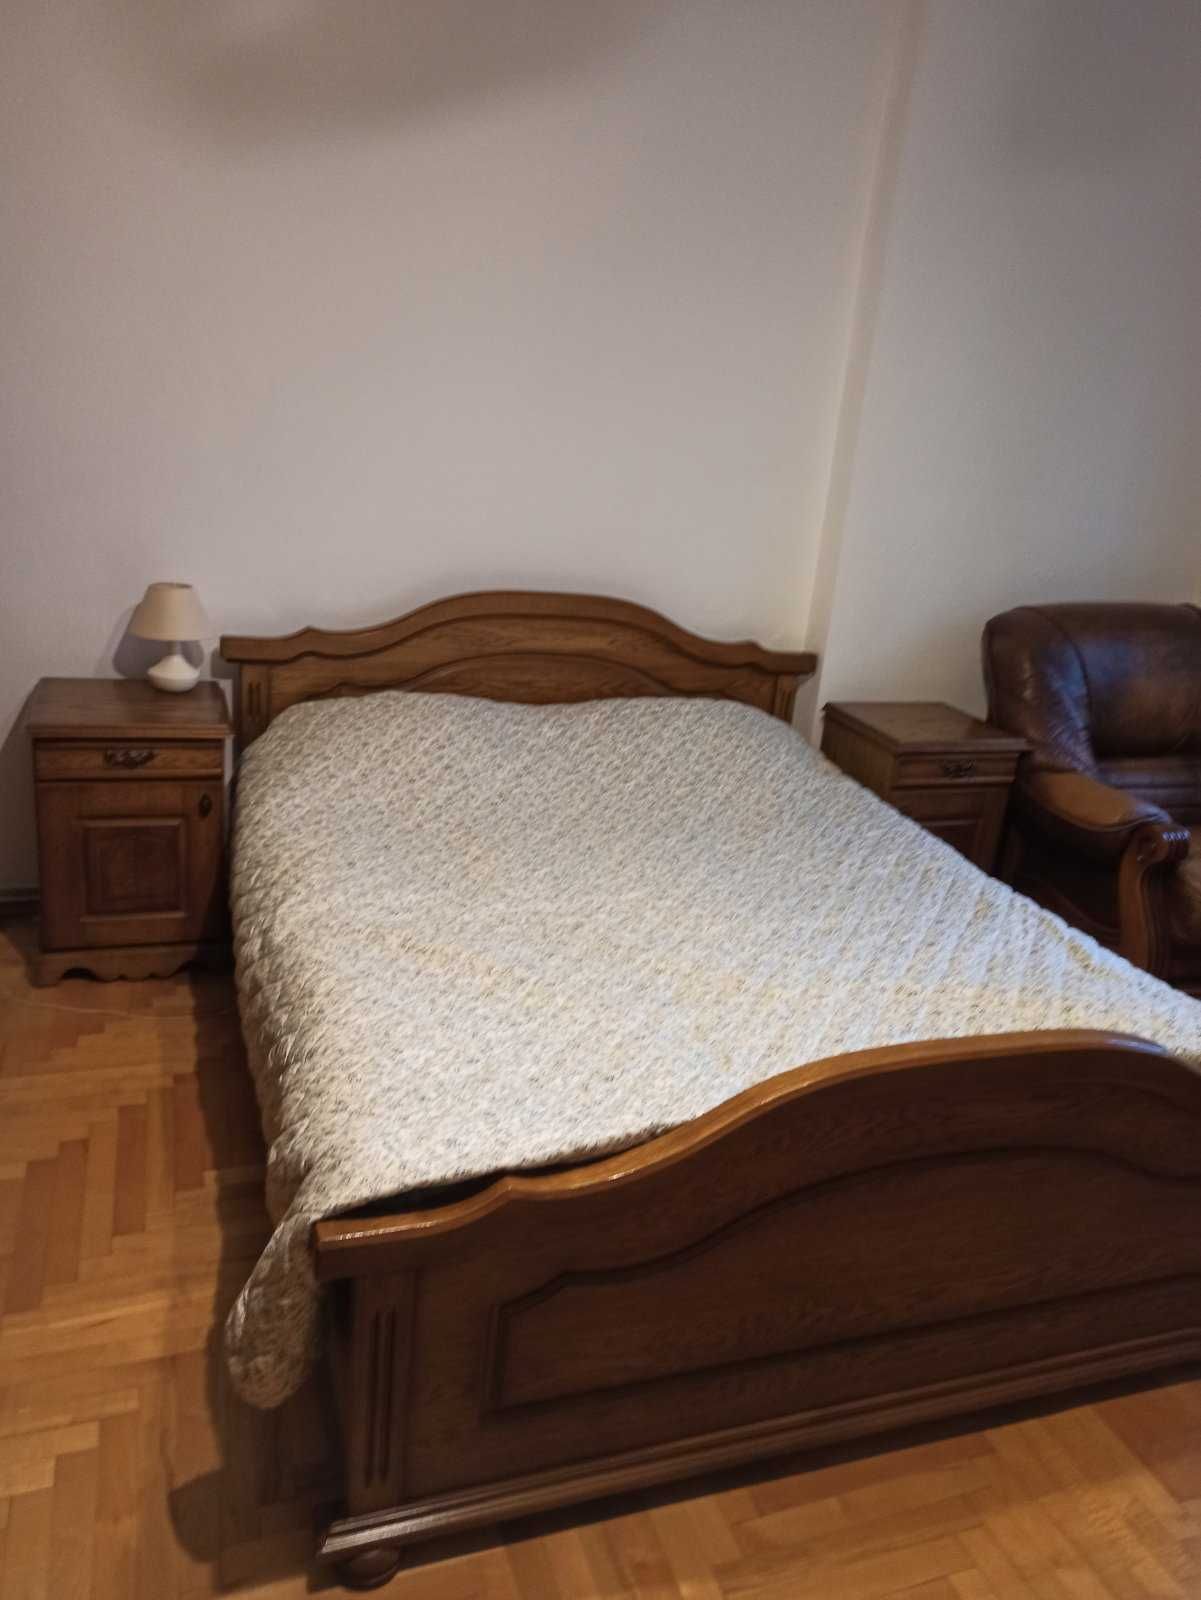 Комплект дерев'яних меблів у спальню: ліжко, тумбочки, шафа, трюмо